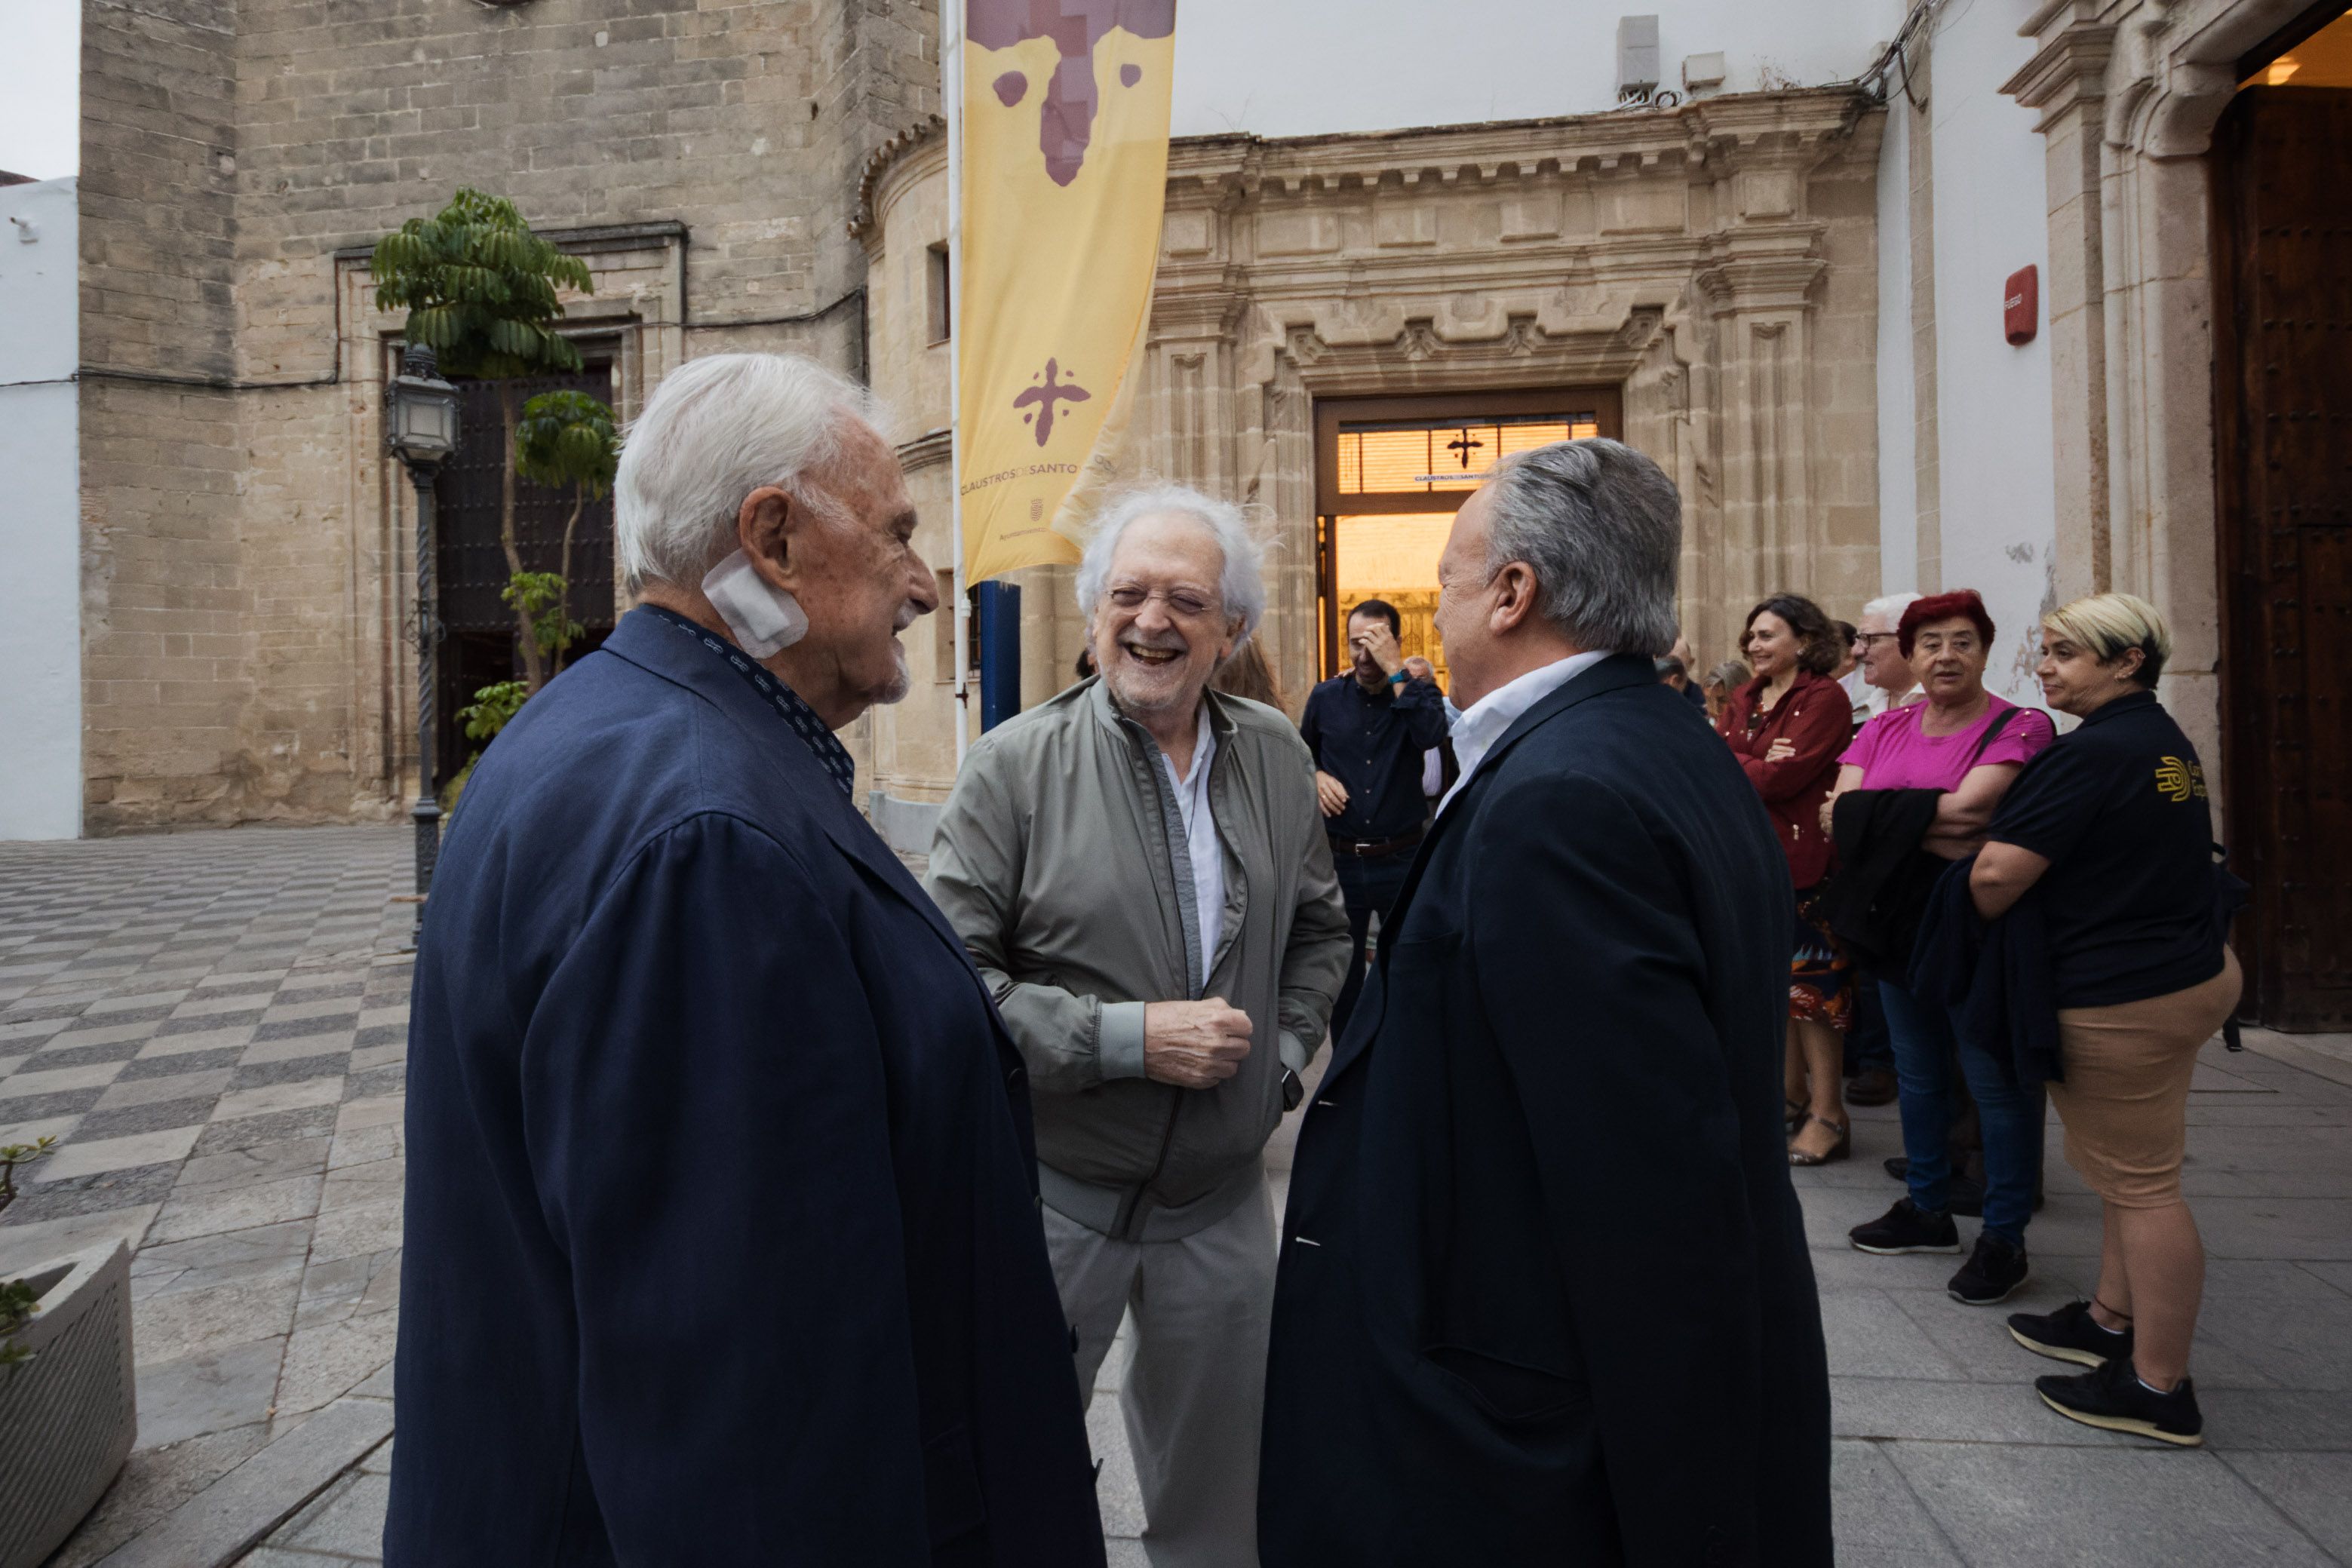 Históricos andalucistas, juntos de nuevo. Rojas Marcos, junto a Pedro Pacheco y Sebastián Romero antes del acto en Jerez, en la tarde de este jueves.